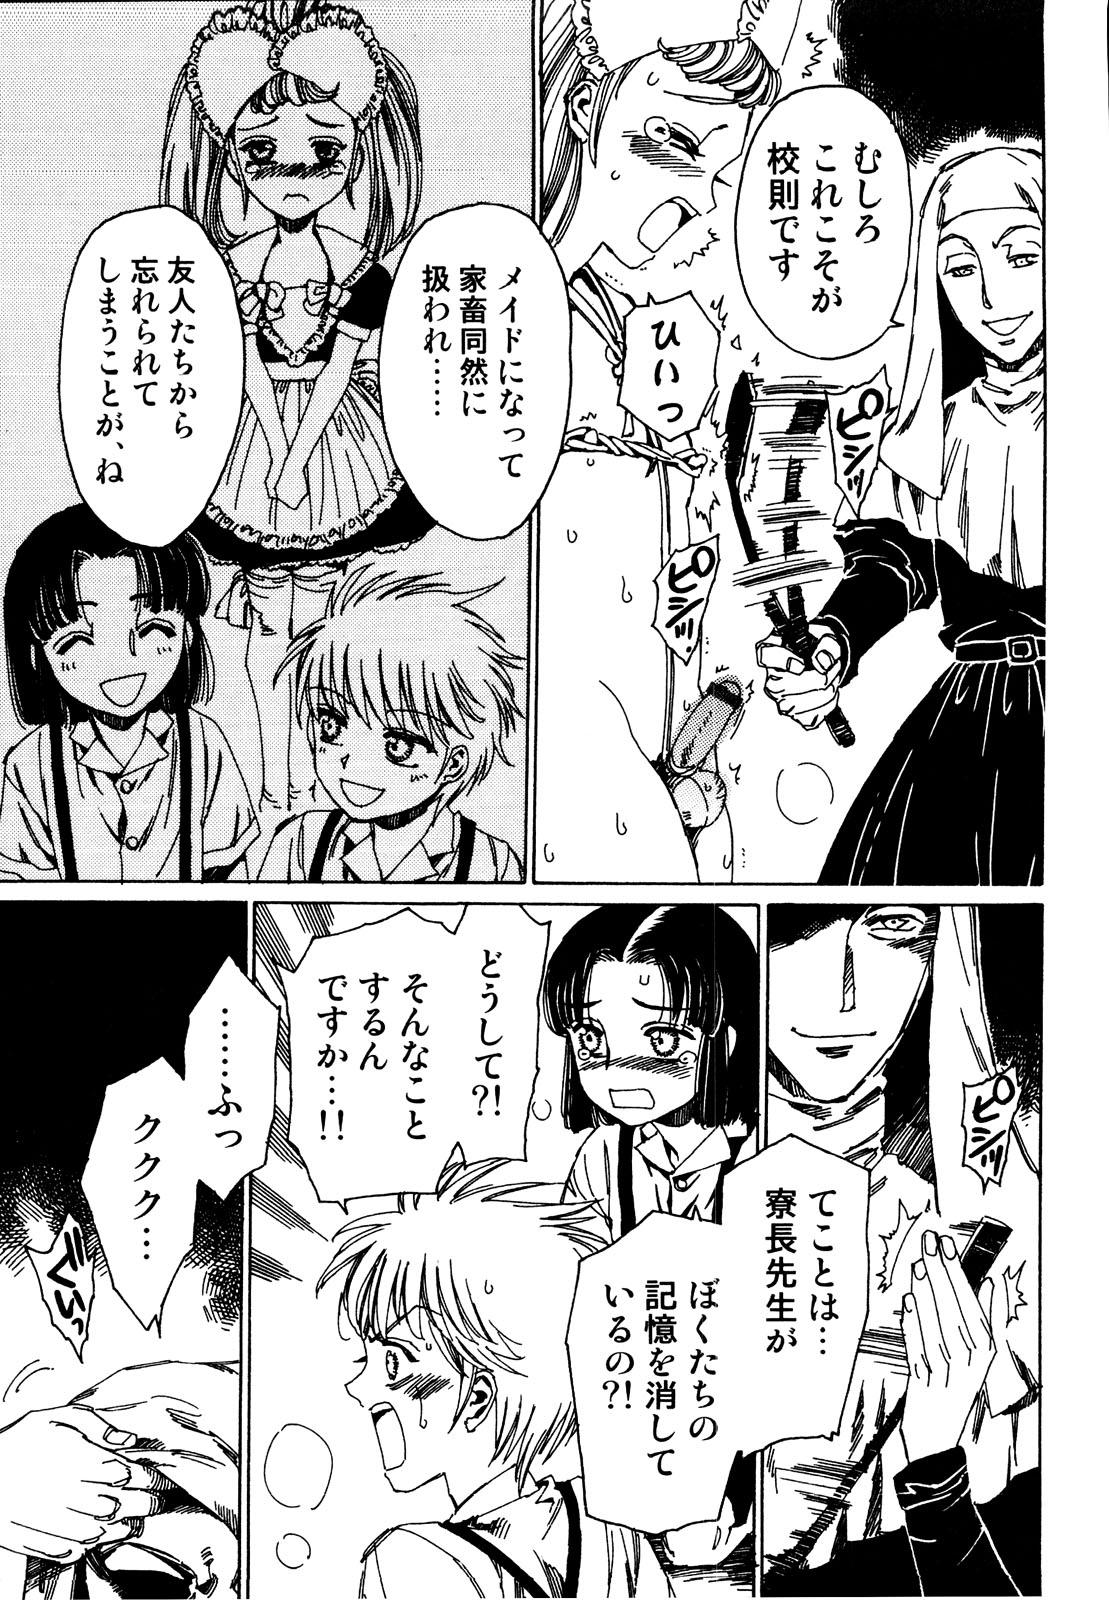 Punish Ero Shota 19 - Otokonoko X Otokonoko Cutie - Page 7